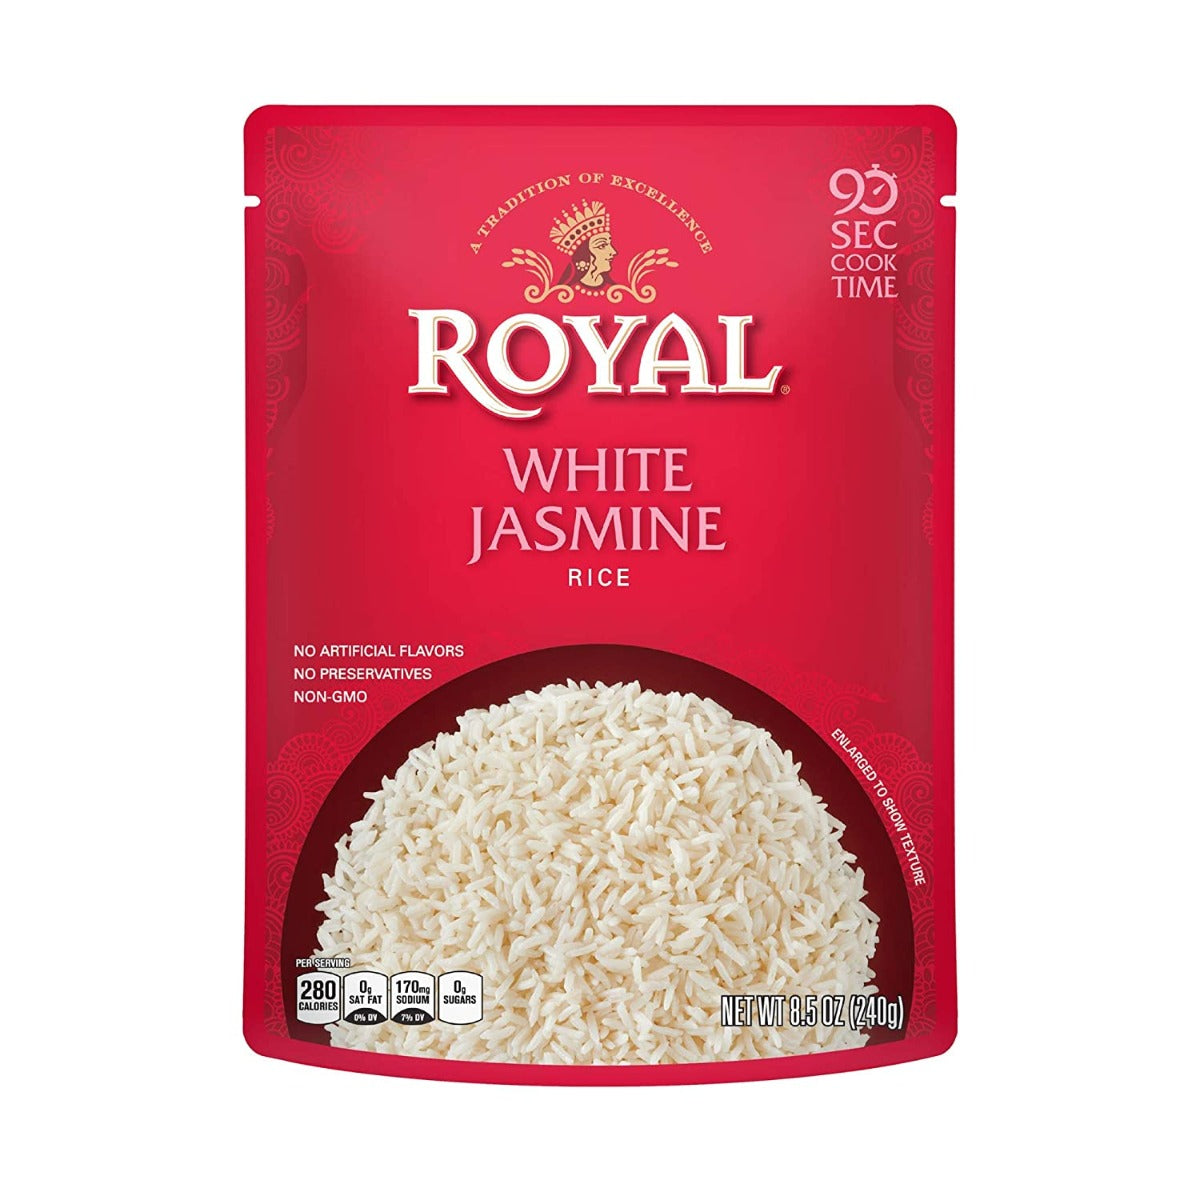 ROYAL: White Jasmine Rice, 240 gm